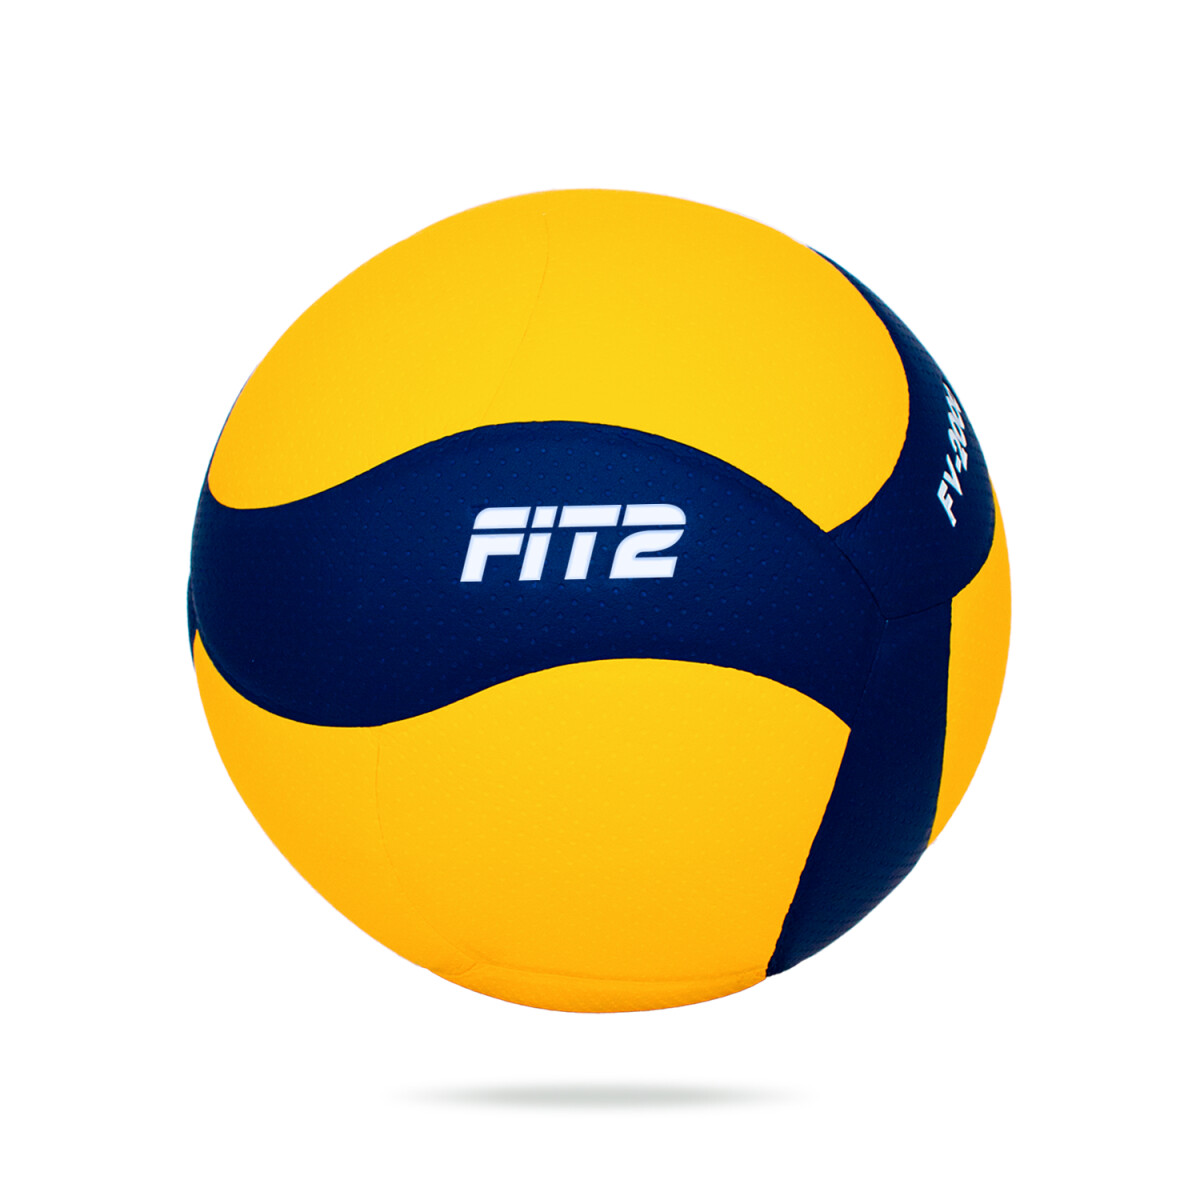 Pelota Fit2 Balon Volley PU N5 Amarillo y Azul - Amarillo y Azul 